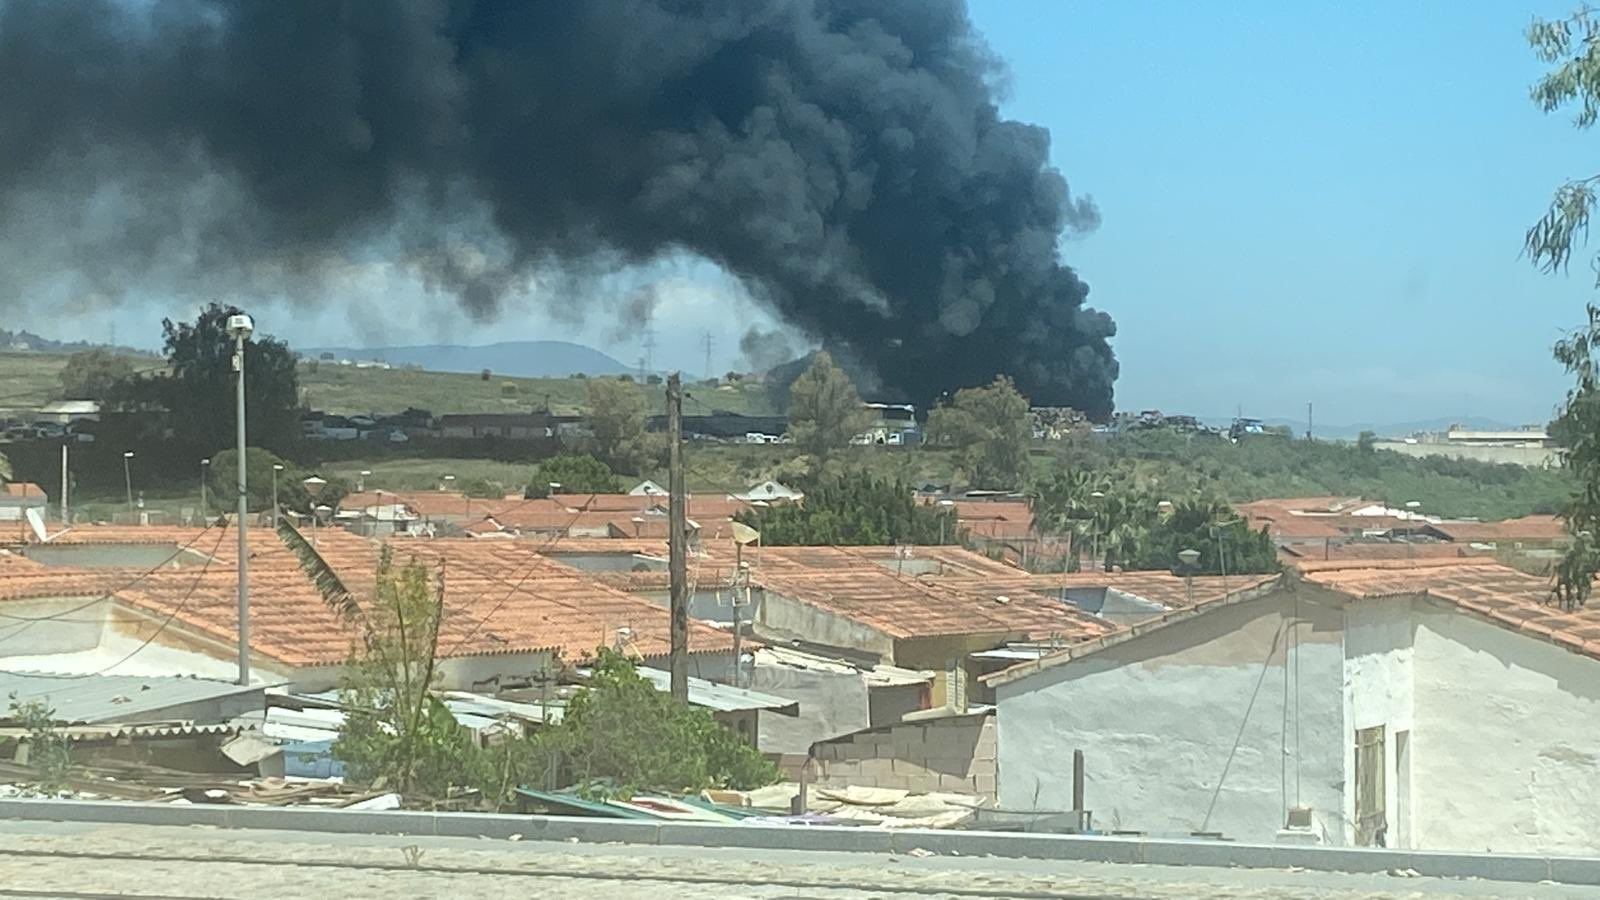 Imágenes del incendio de un desguace en Los Asperones